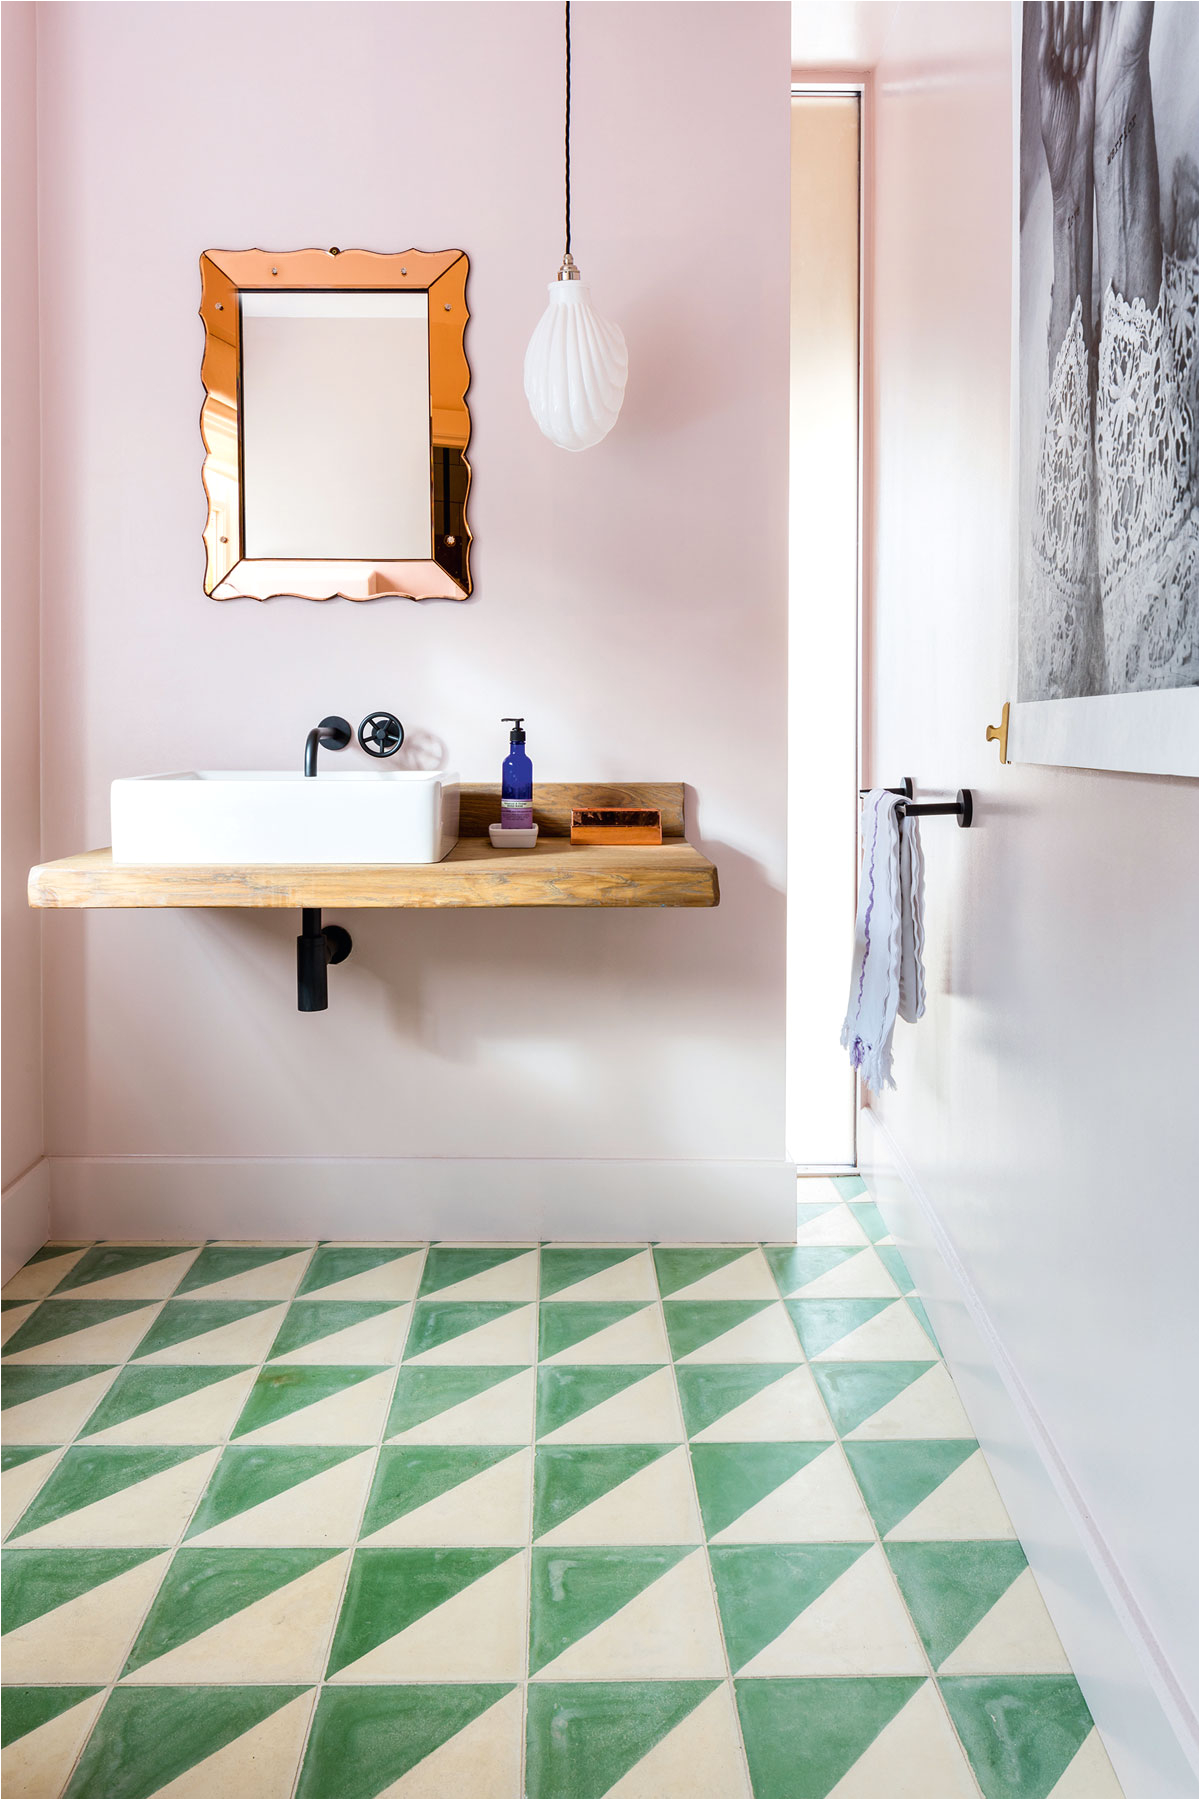 Bathtub Tile Ideas 2019 the Latest Bathroom Trends and Bathroom Designs for 2019